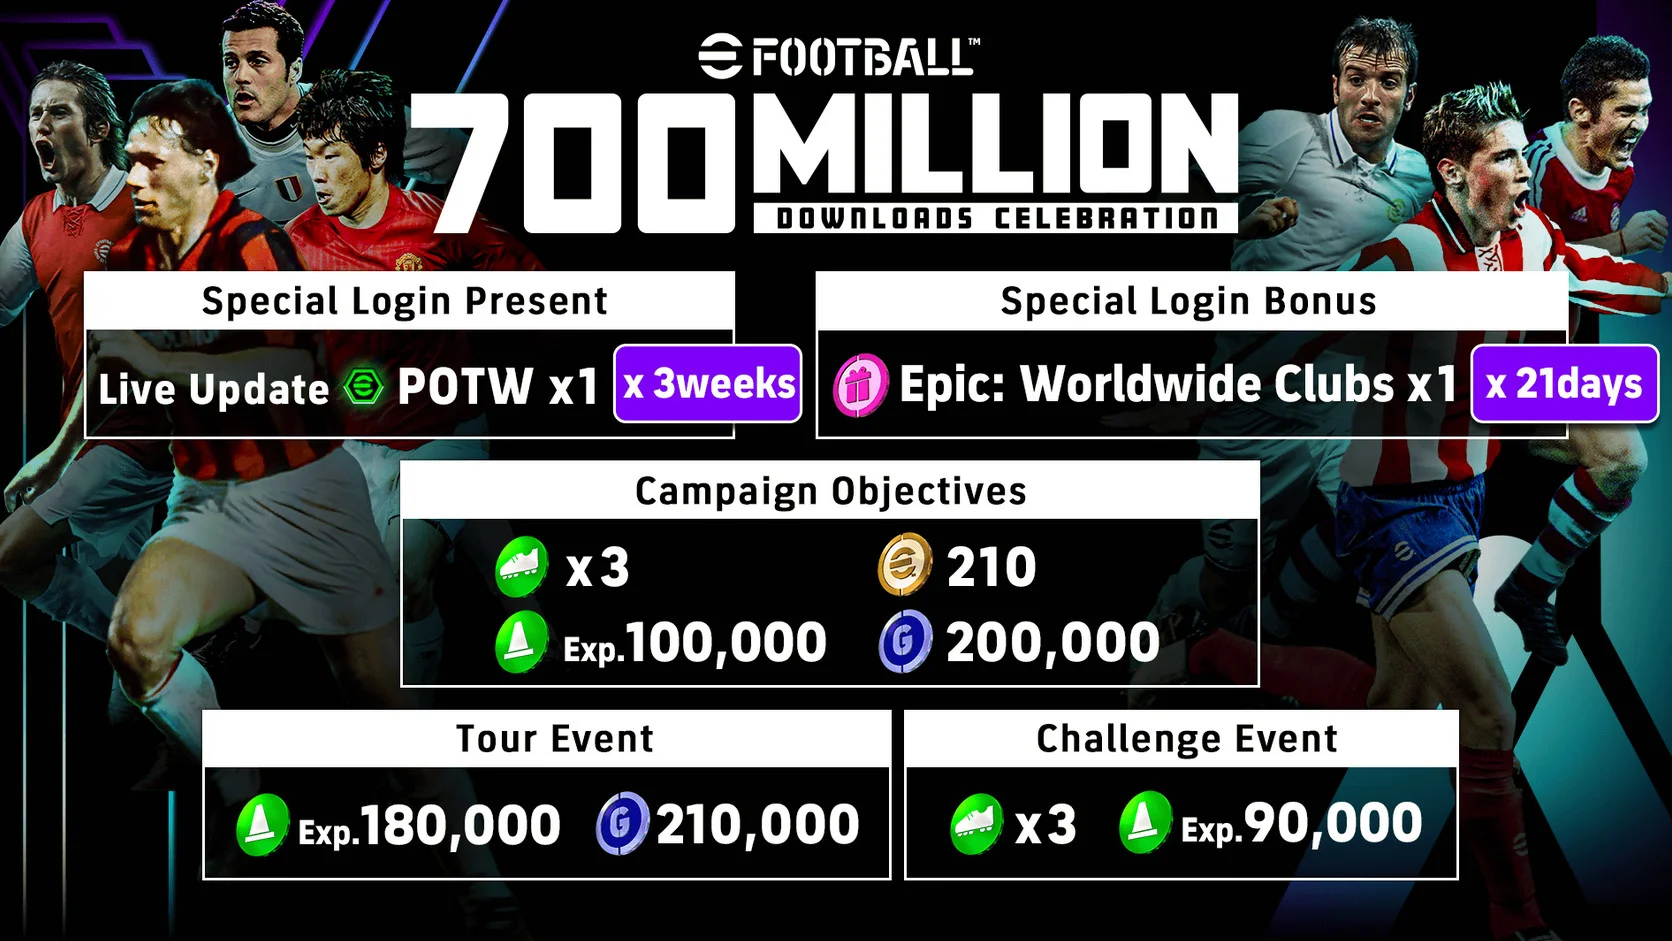 Мобильный симулятор футбола eFootball достиг 700 миллионов загрузок - фото 1